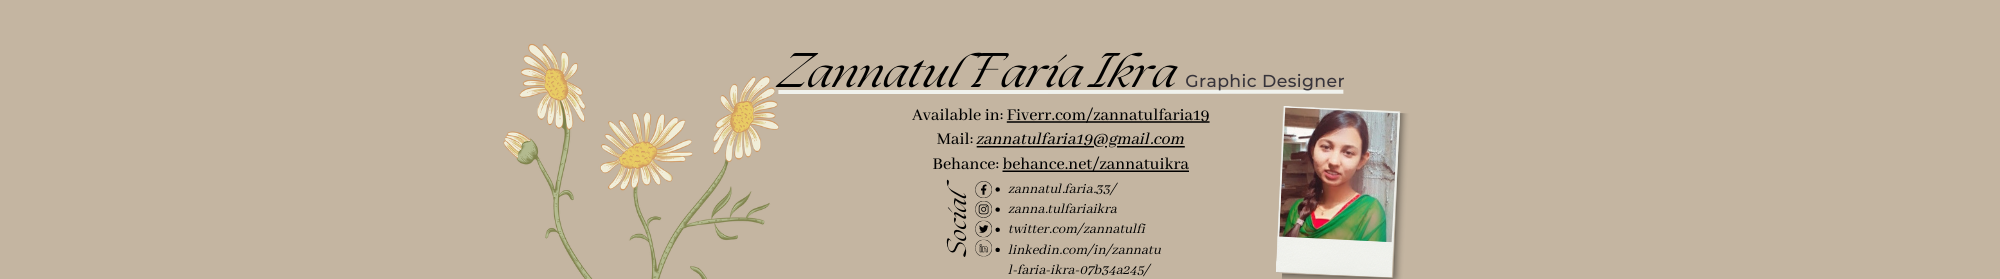 Zannatul Faria Ikra's profile banner